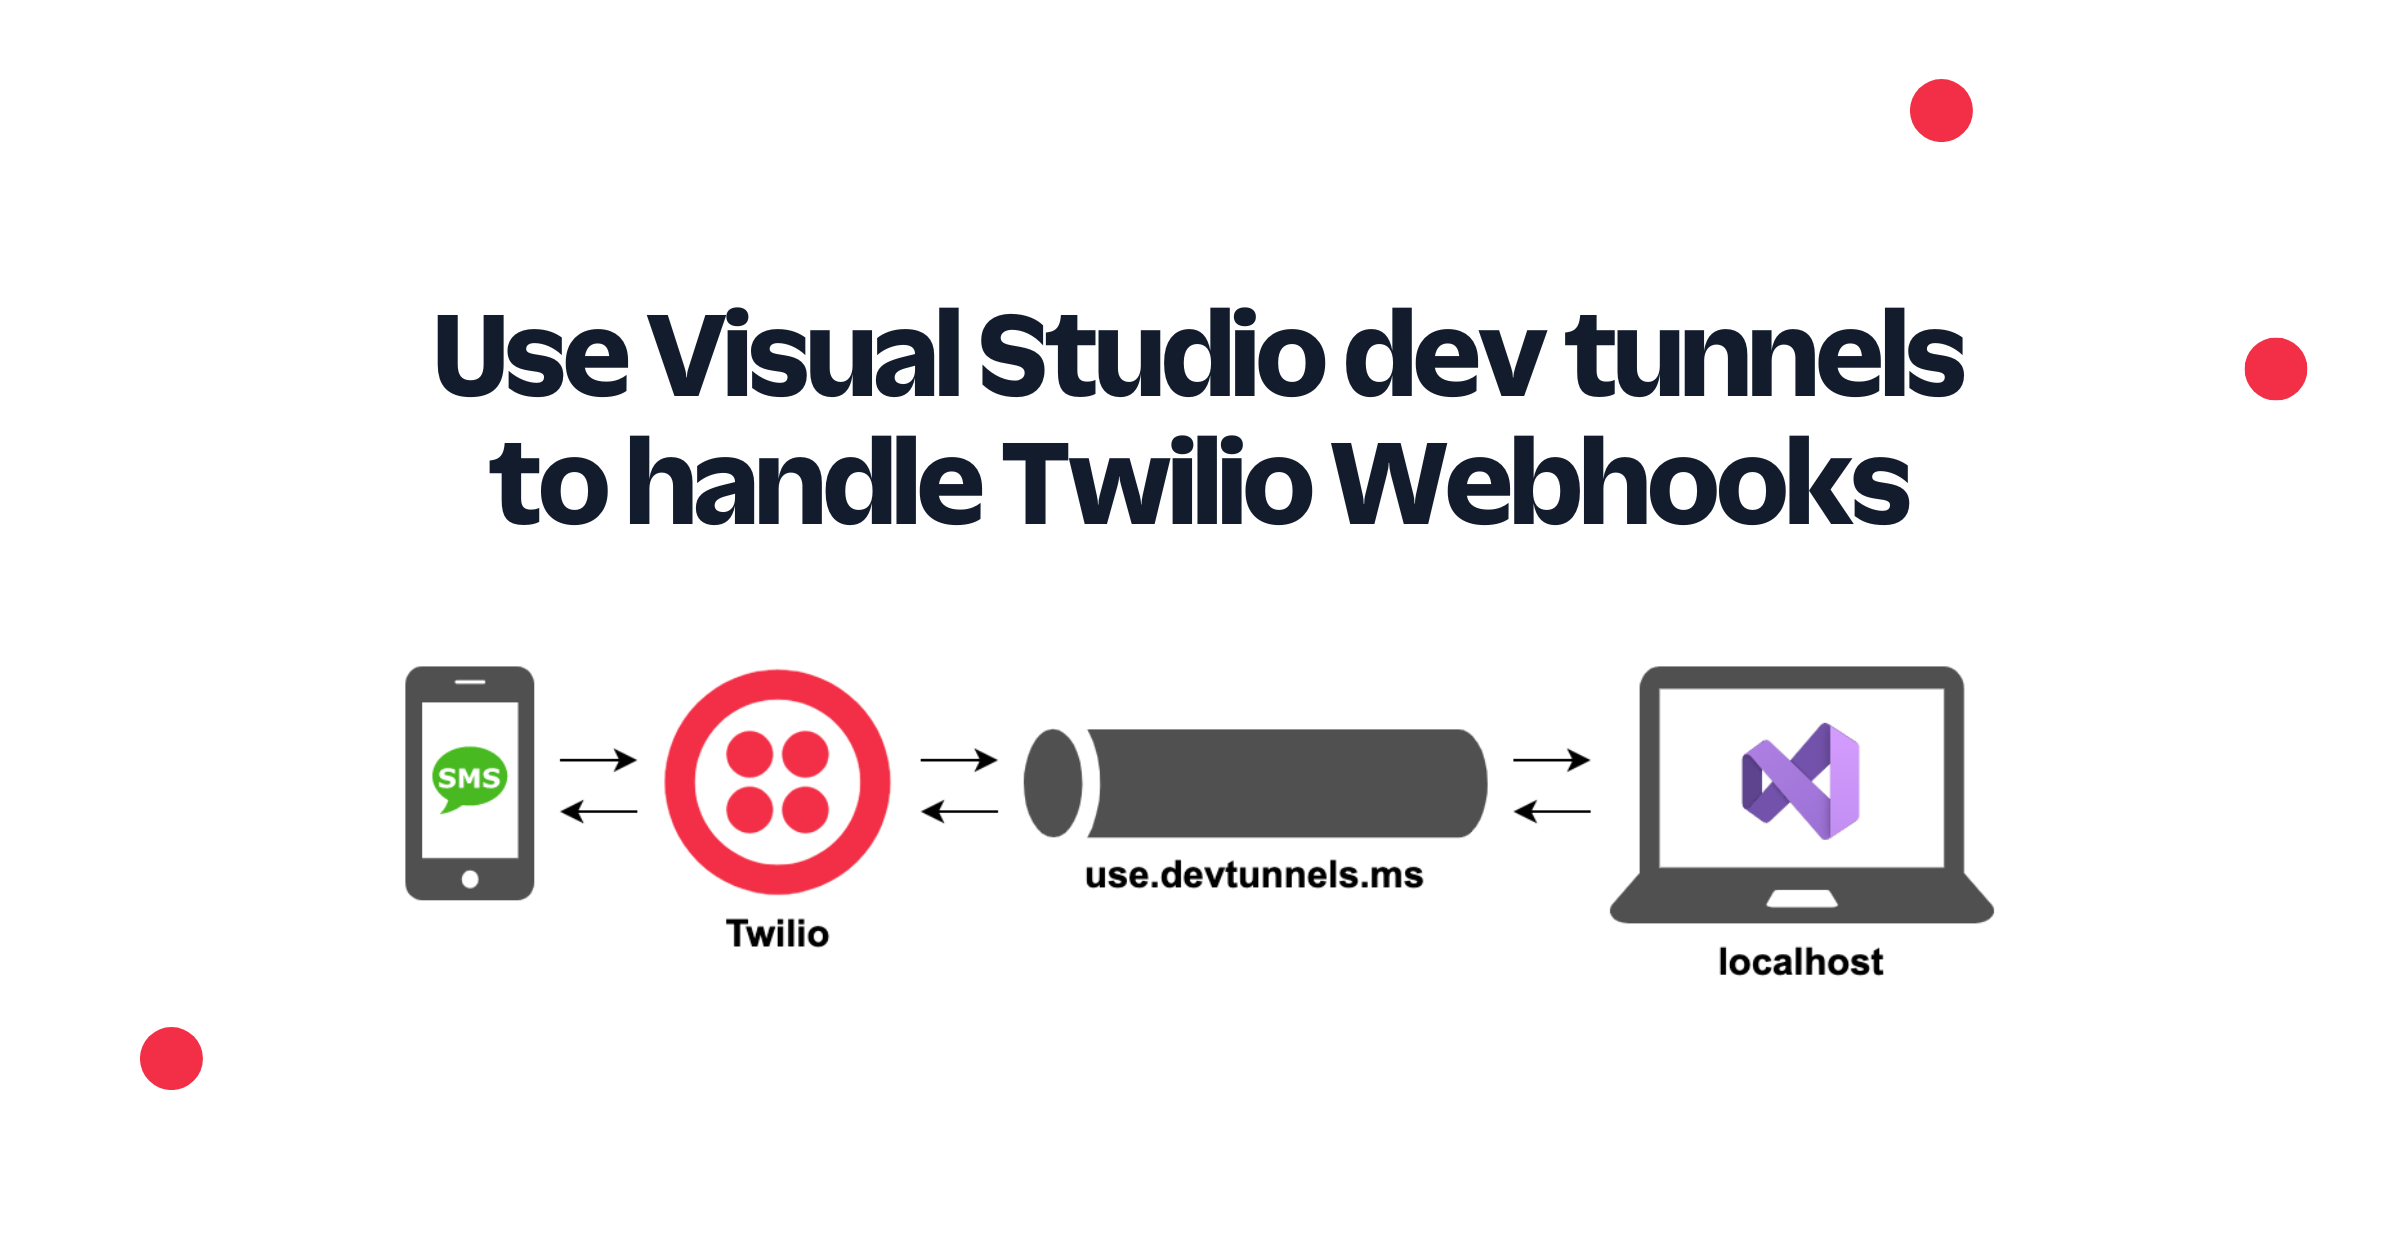 Use Visual Studio dev tunnels to handle Twilio Webhooks